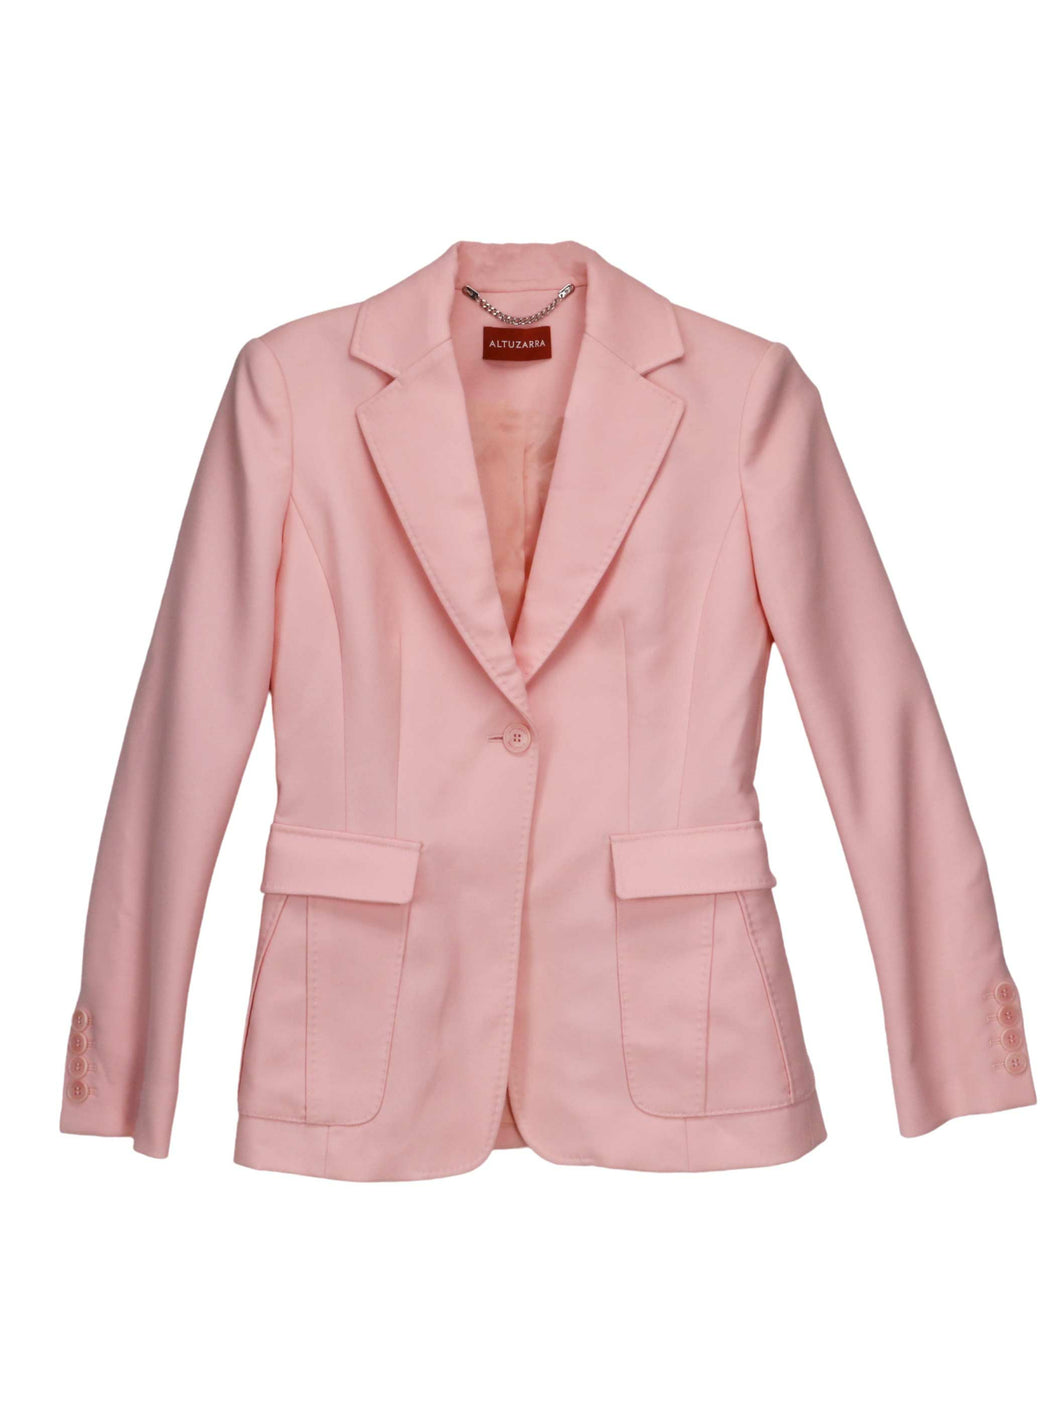 Altuzarra Women's Dusty Rose Kenton Blazer Suit Jackets & - 6